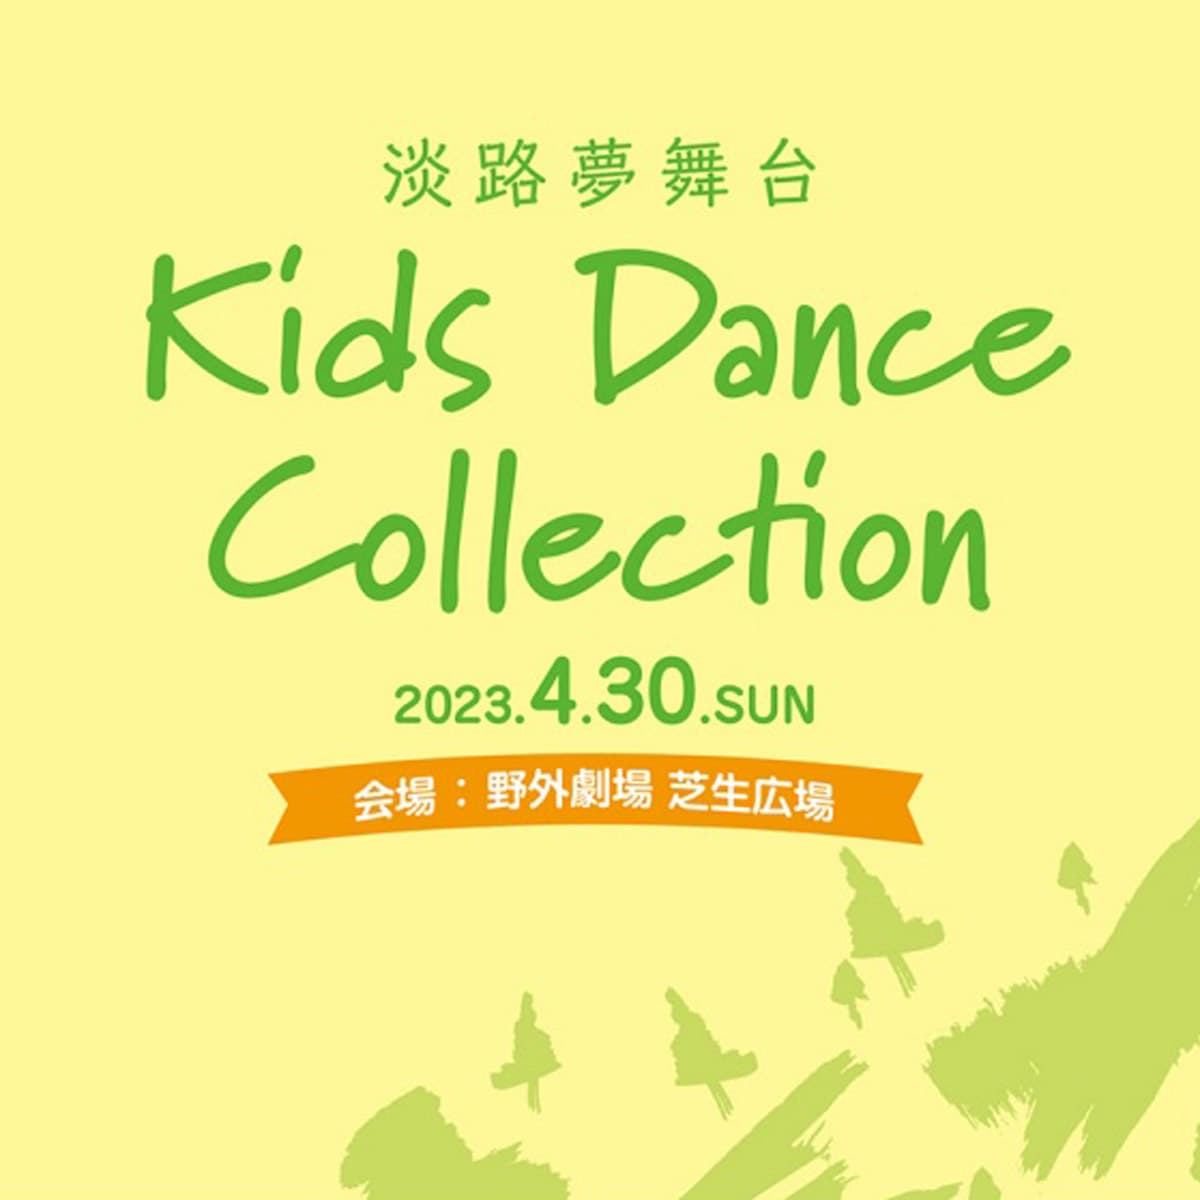 キッズダンスコレクション「Kids Dance Collection」淡路夢舞台